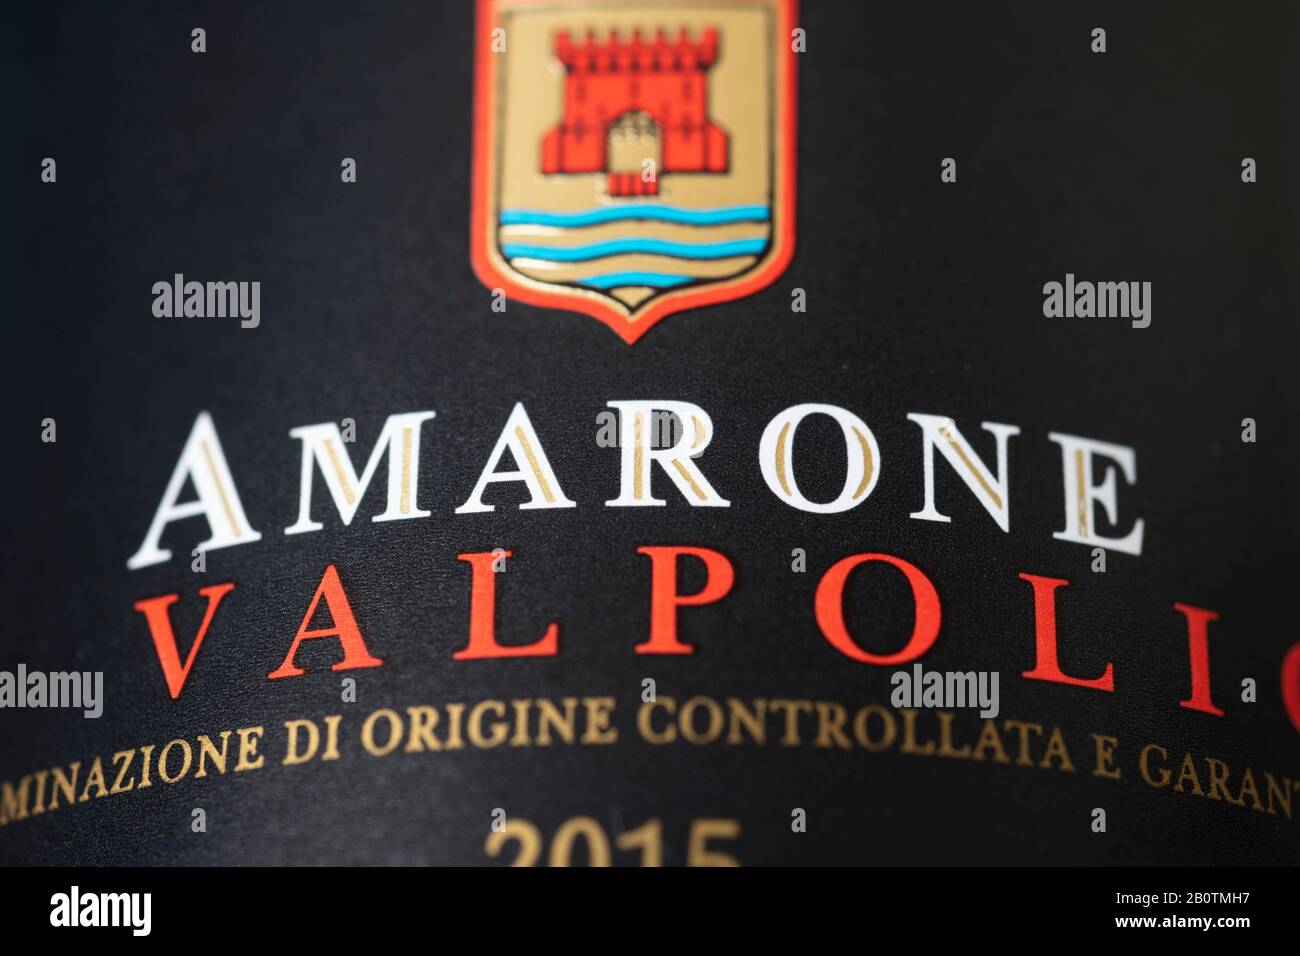 Étiquette de bouteille de vin Amarone della Valpolicella, Italie. Crédit: Malcolm Park/Alay. Banque D'Images